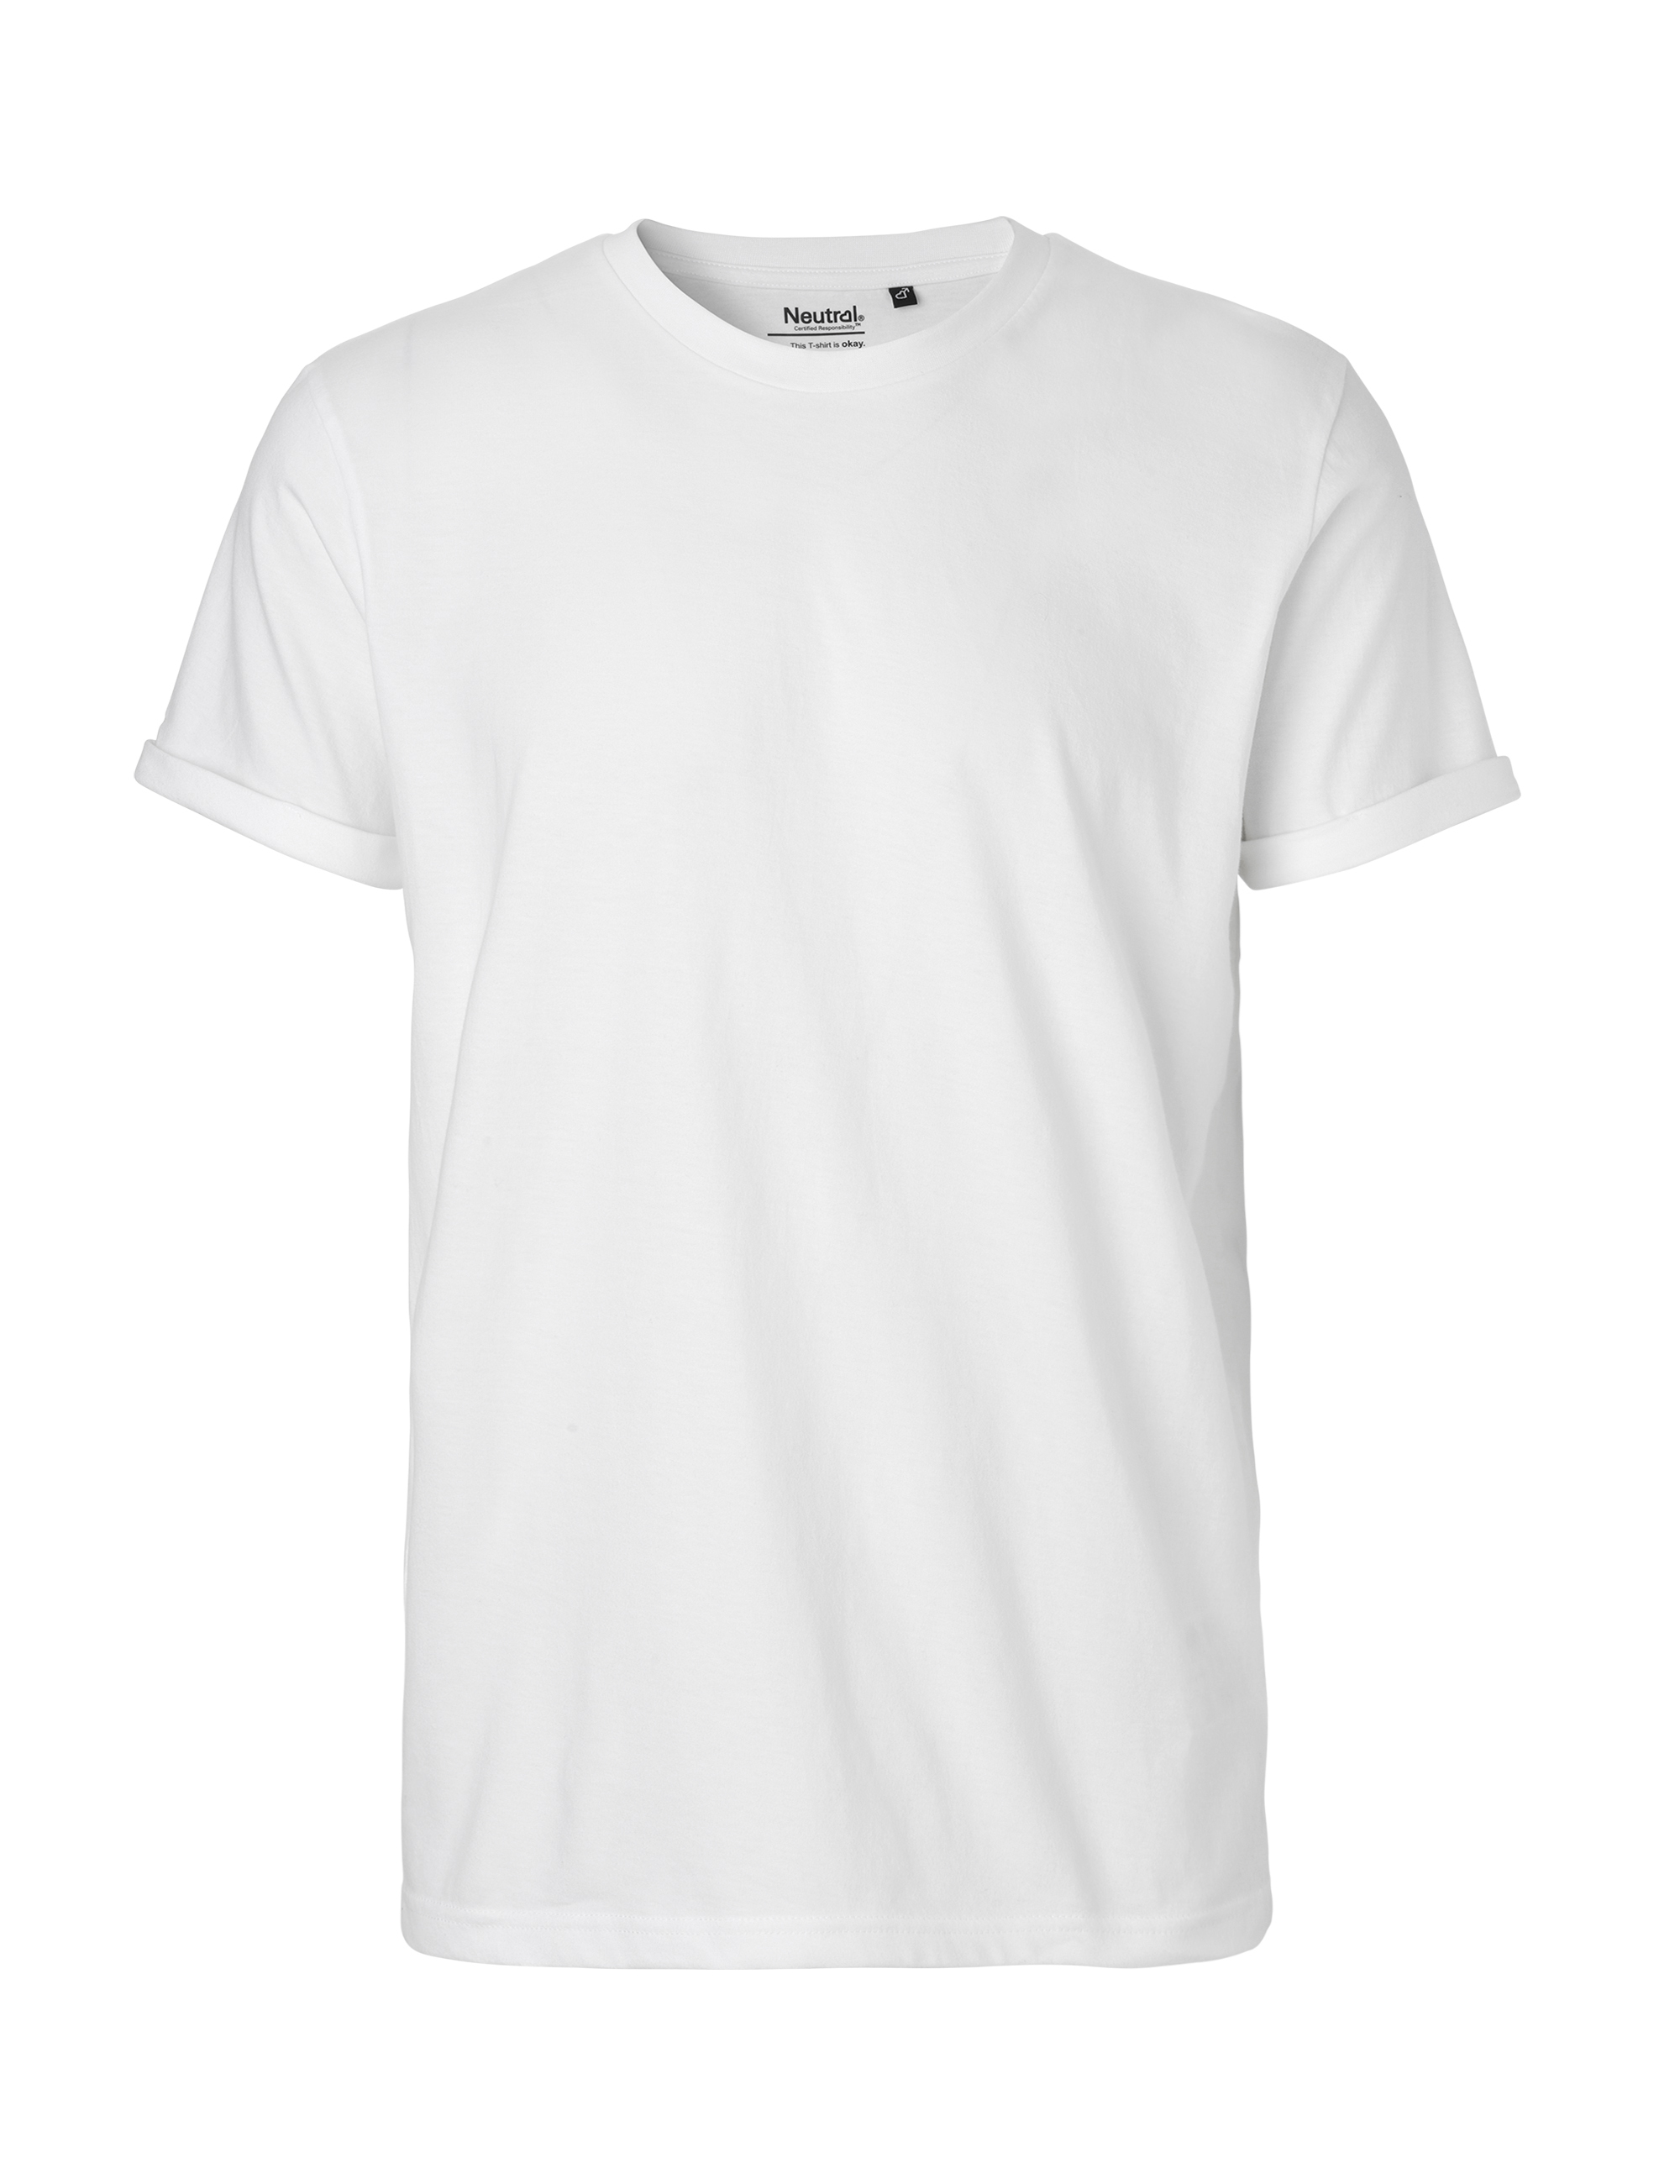 Organic Fairtrade Herren T-Shirt Roll Up Sleeve 155 g/m² Neutral® White 3XL